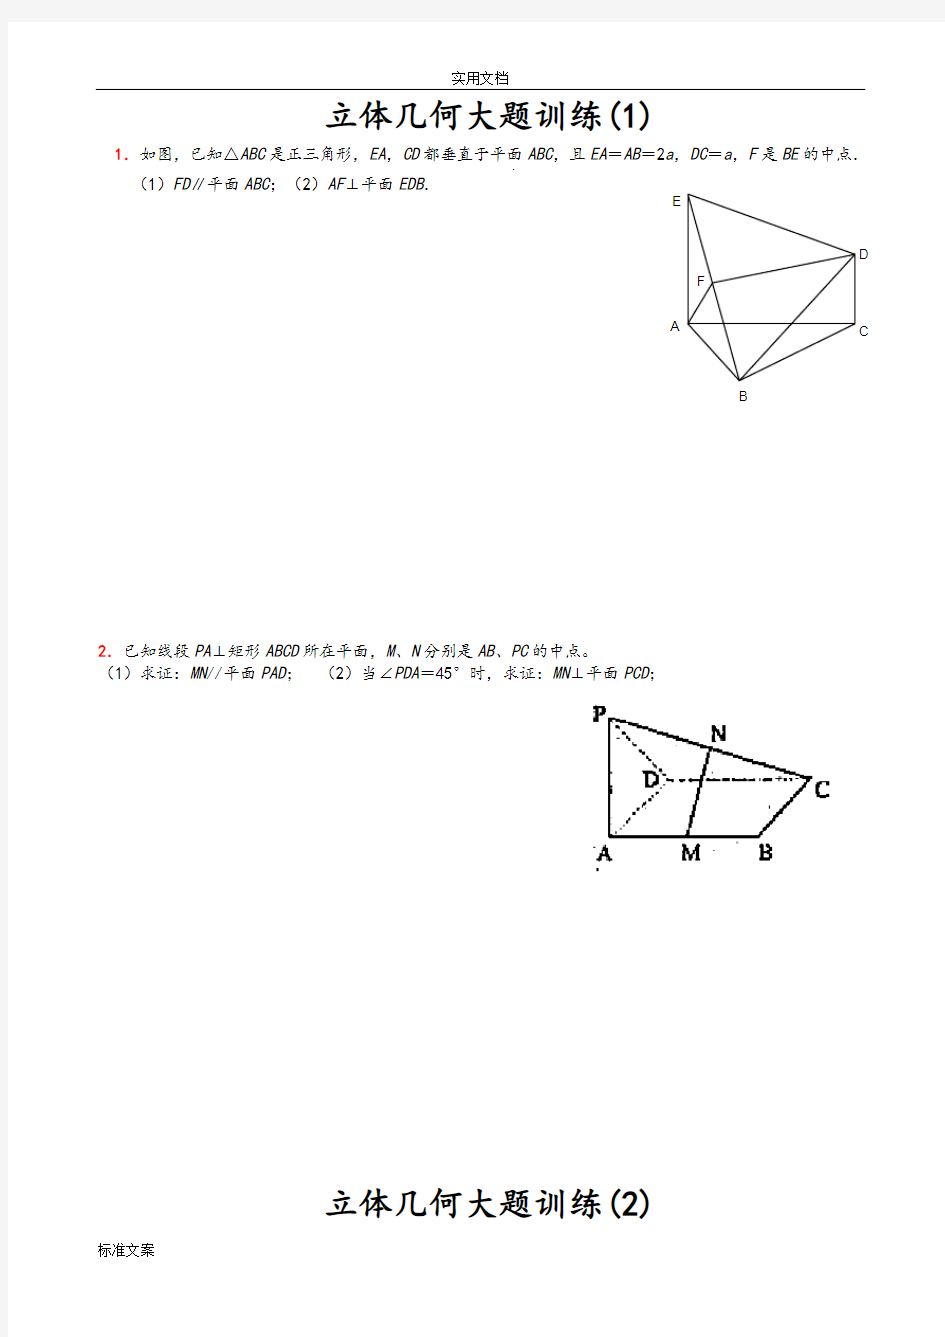 立体几何经典大题(各个类型地典型题目)